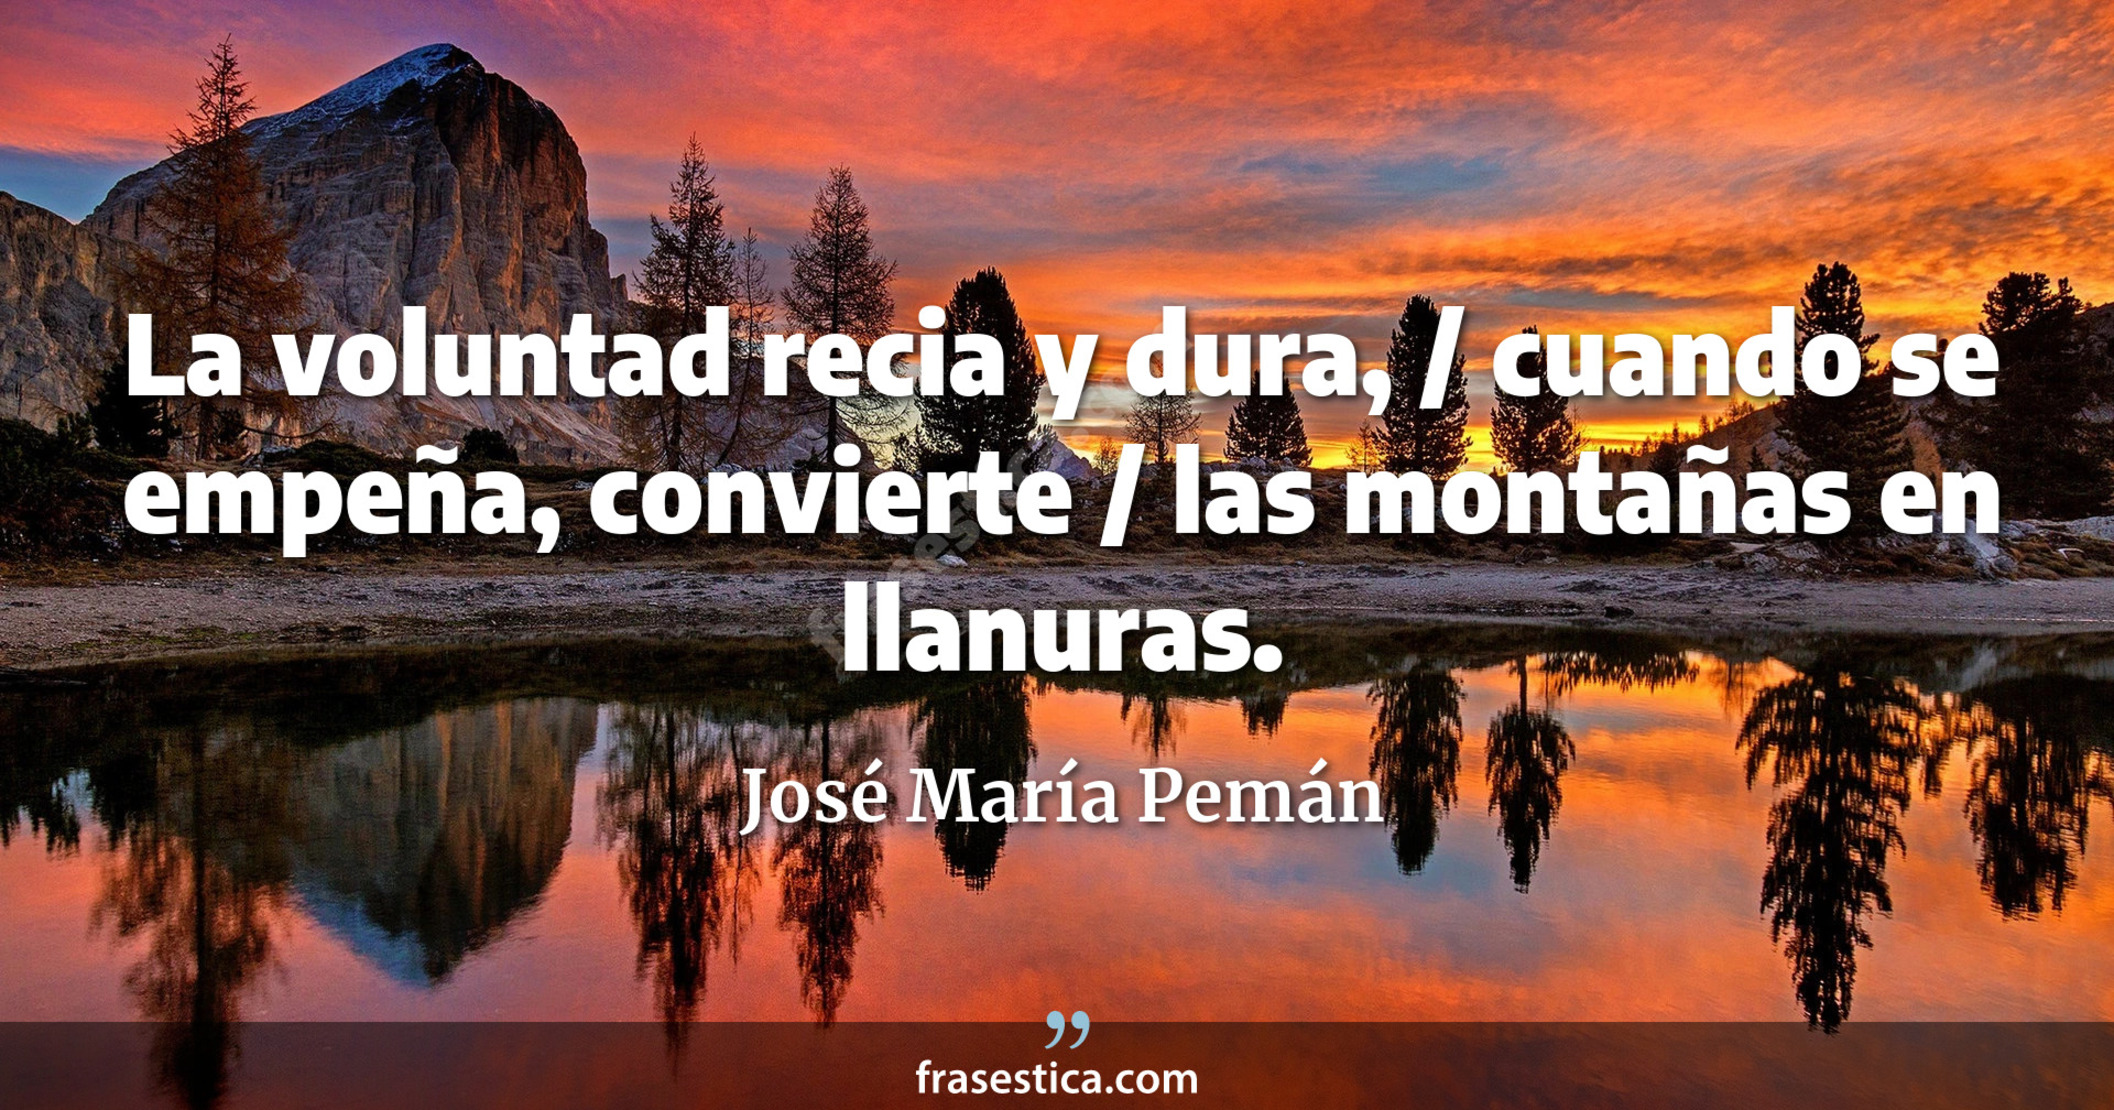 La voluntad recia y dura, / cuando se empeña, convierte / las montañas en llanuras. - José María Pemán